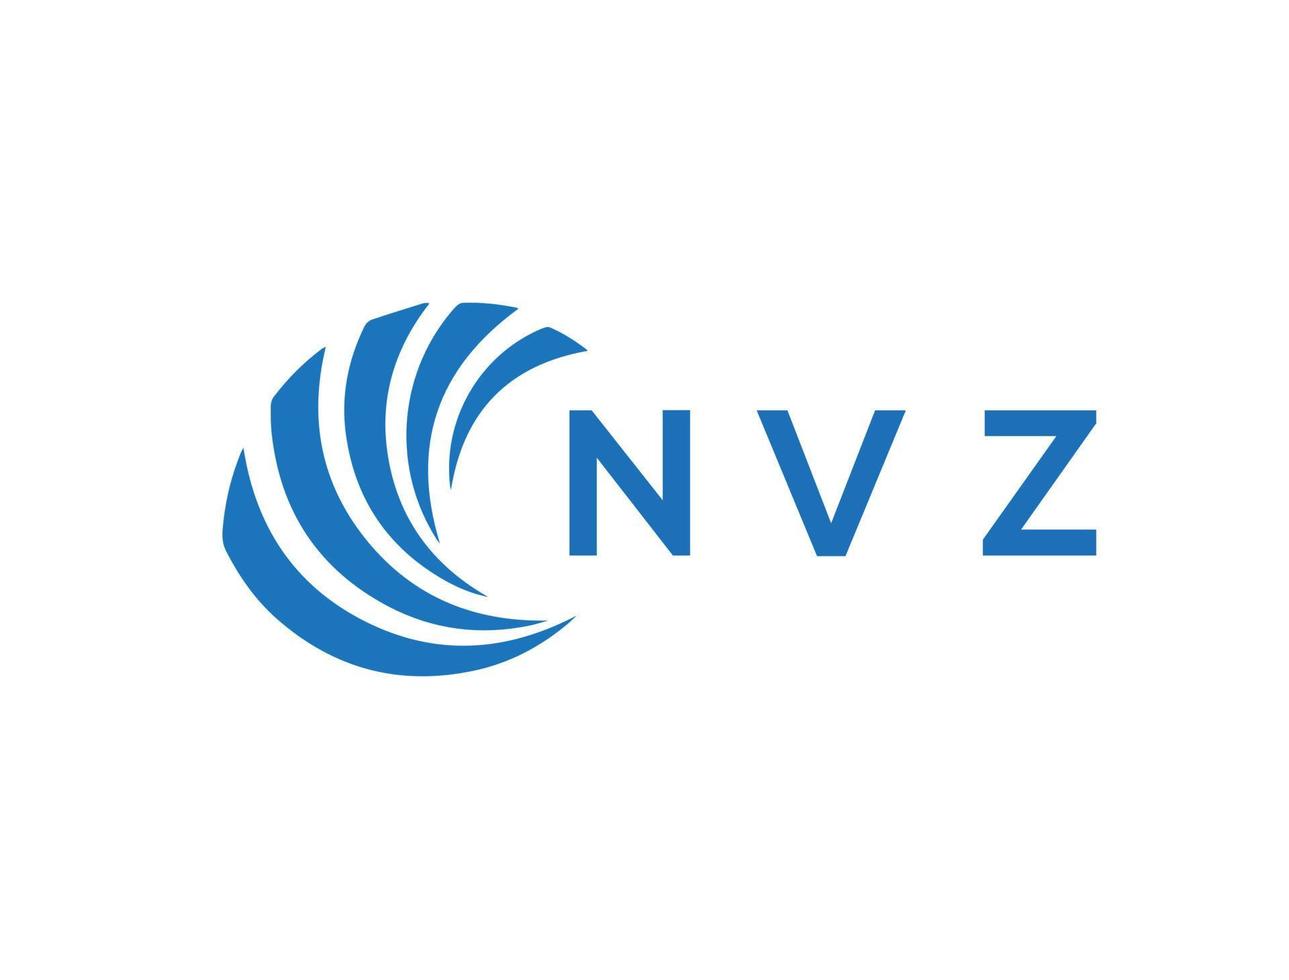 NVZ letter logo design on white background. NVZ creative circle letter logo concept. NVZ letter design. vector